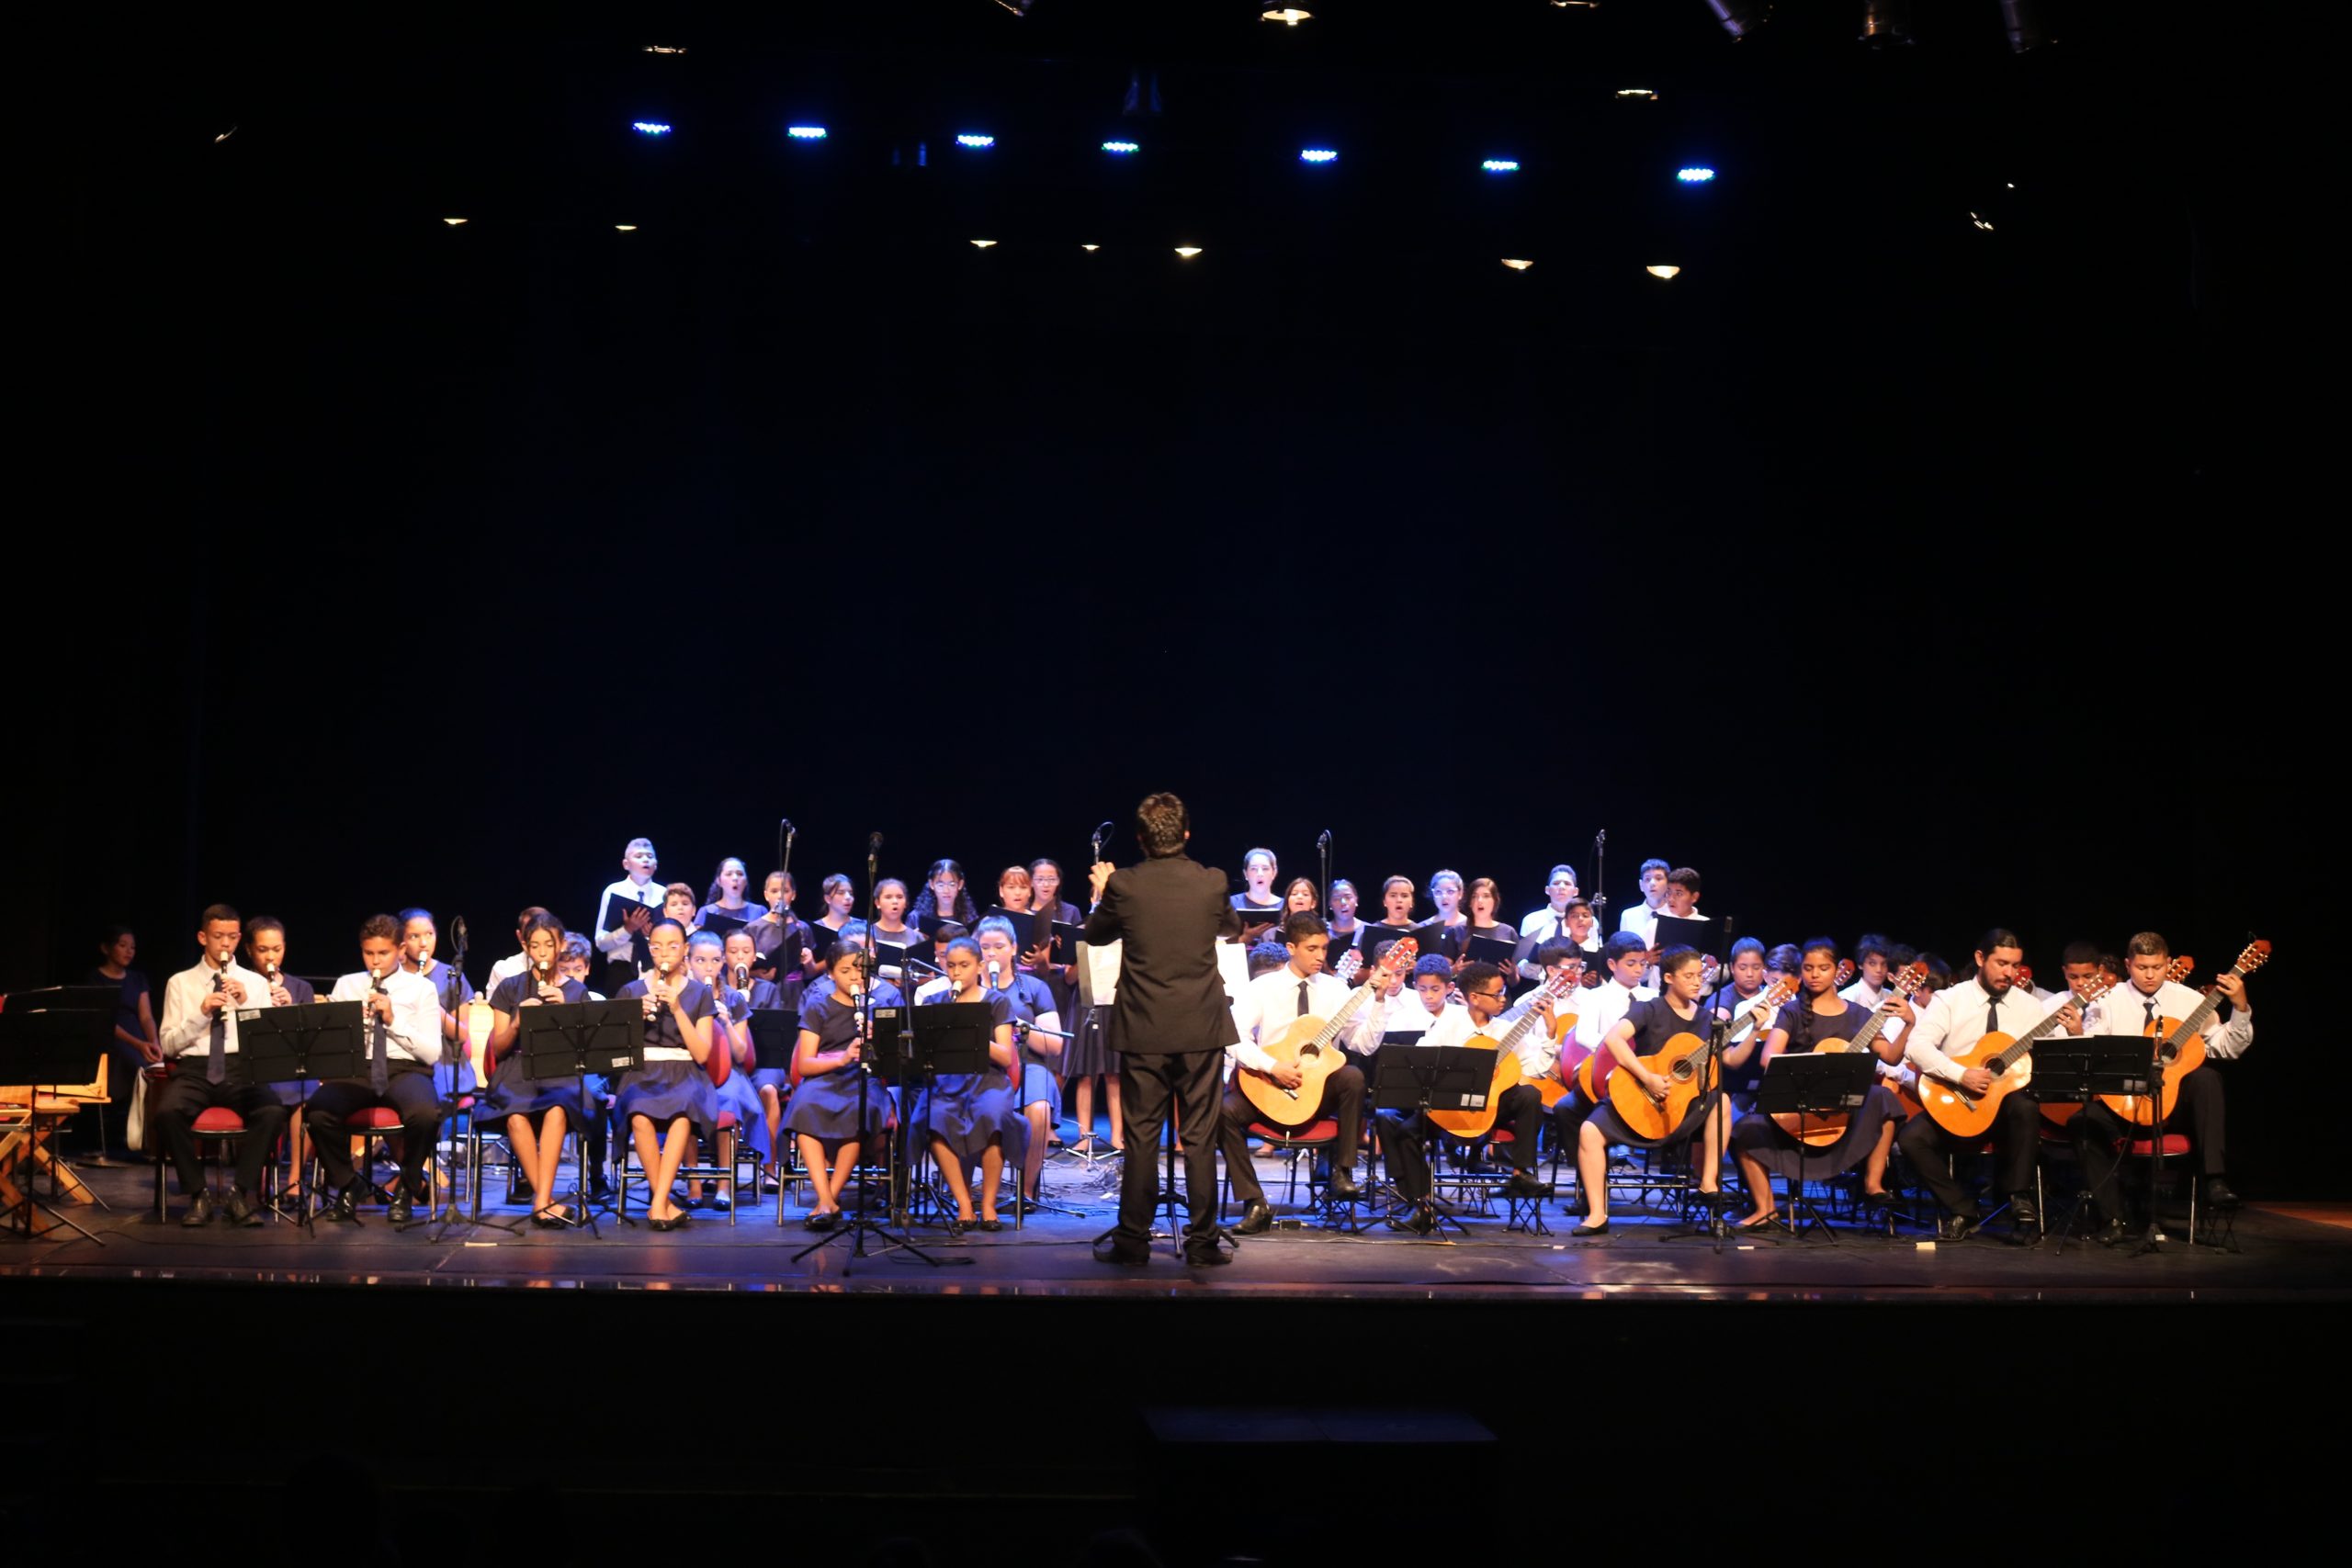 Orquestra e Coro da FRFagner apresenta espetáculo cênico musical inédito em Fortaleza